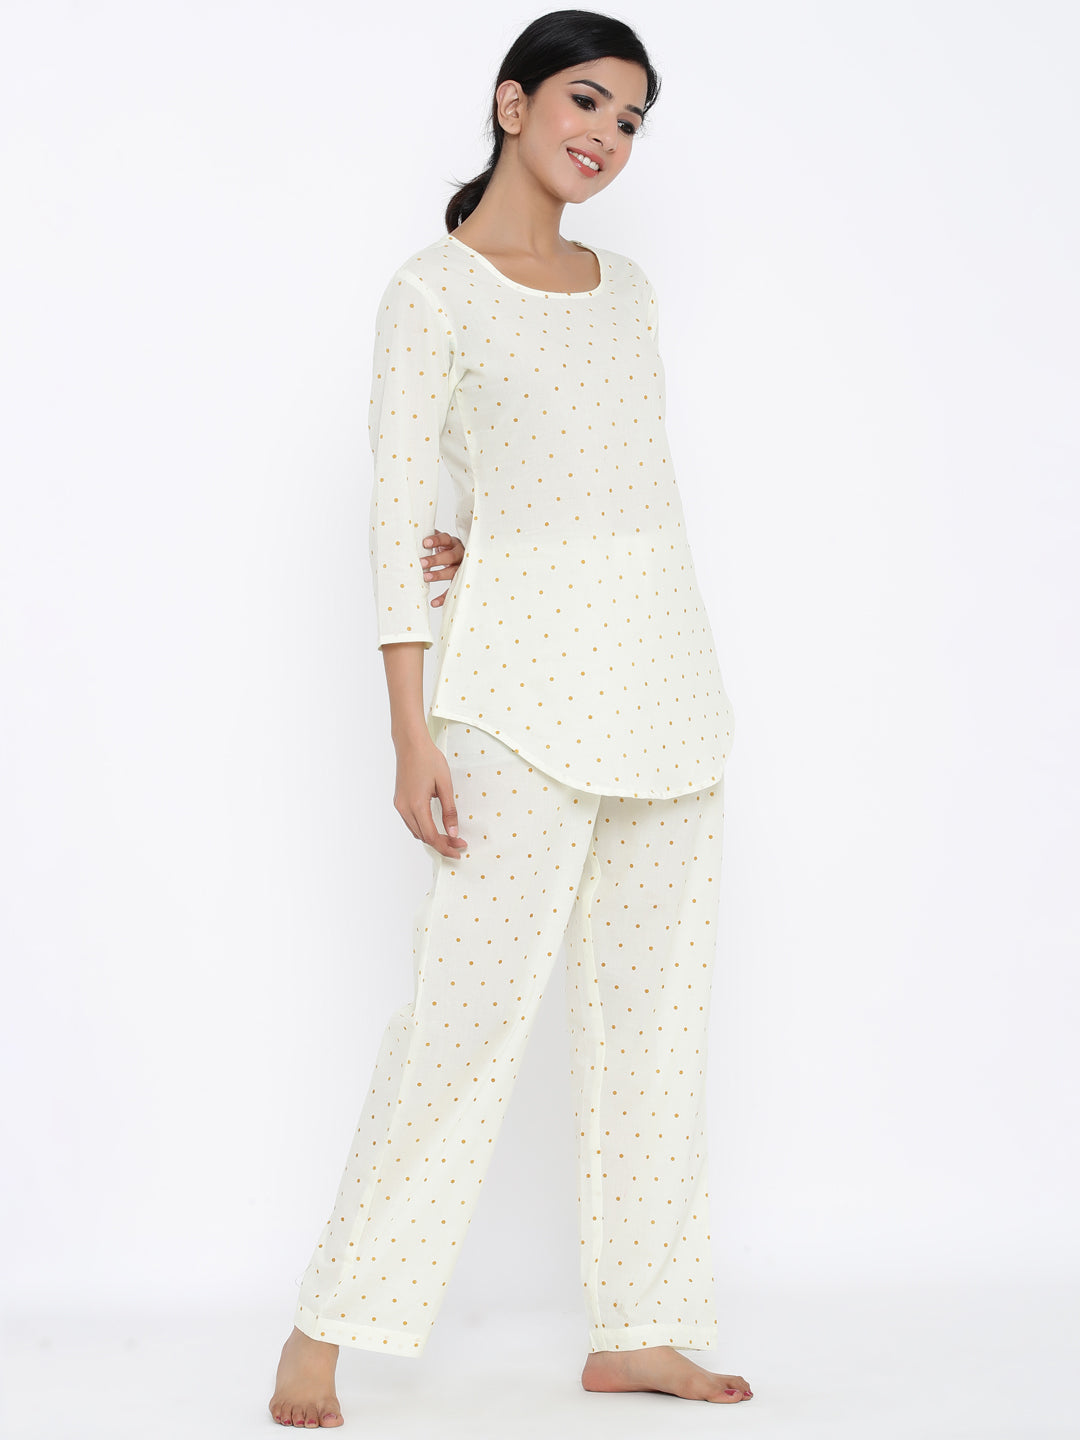 Cotton Printed Regular Top And Pyjama